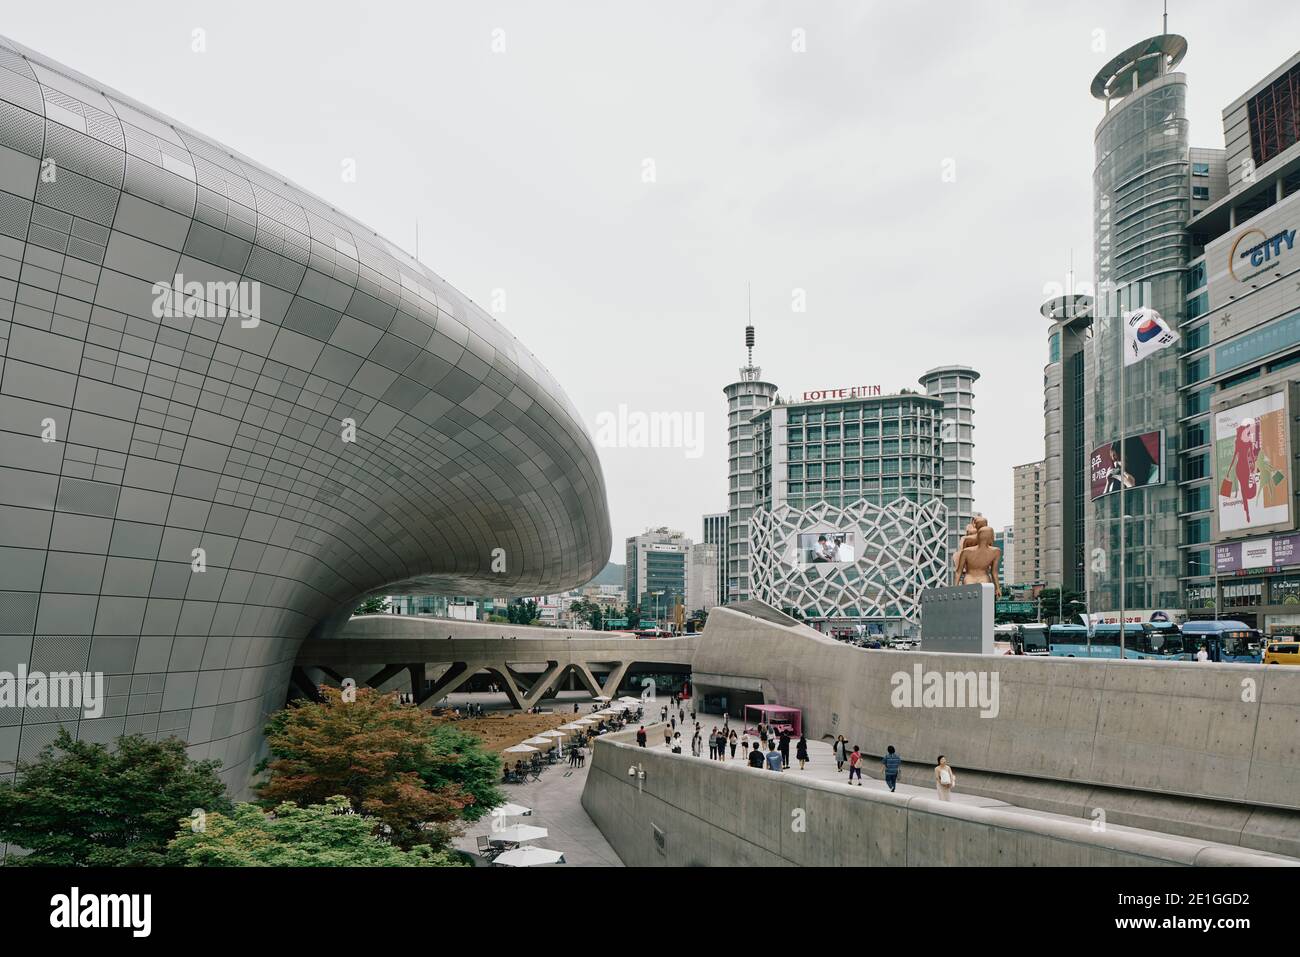 Vue extérieure de Dongdaemun Design Plaza, également connu sous le nom de DDP, un centre culturel au centre de Dongdaemun, un quartier historique de Séoul, Corée du Sud. Banque D'Images